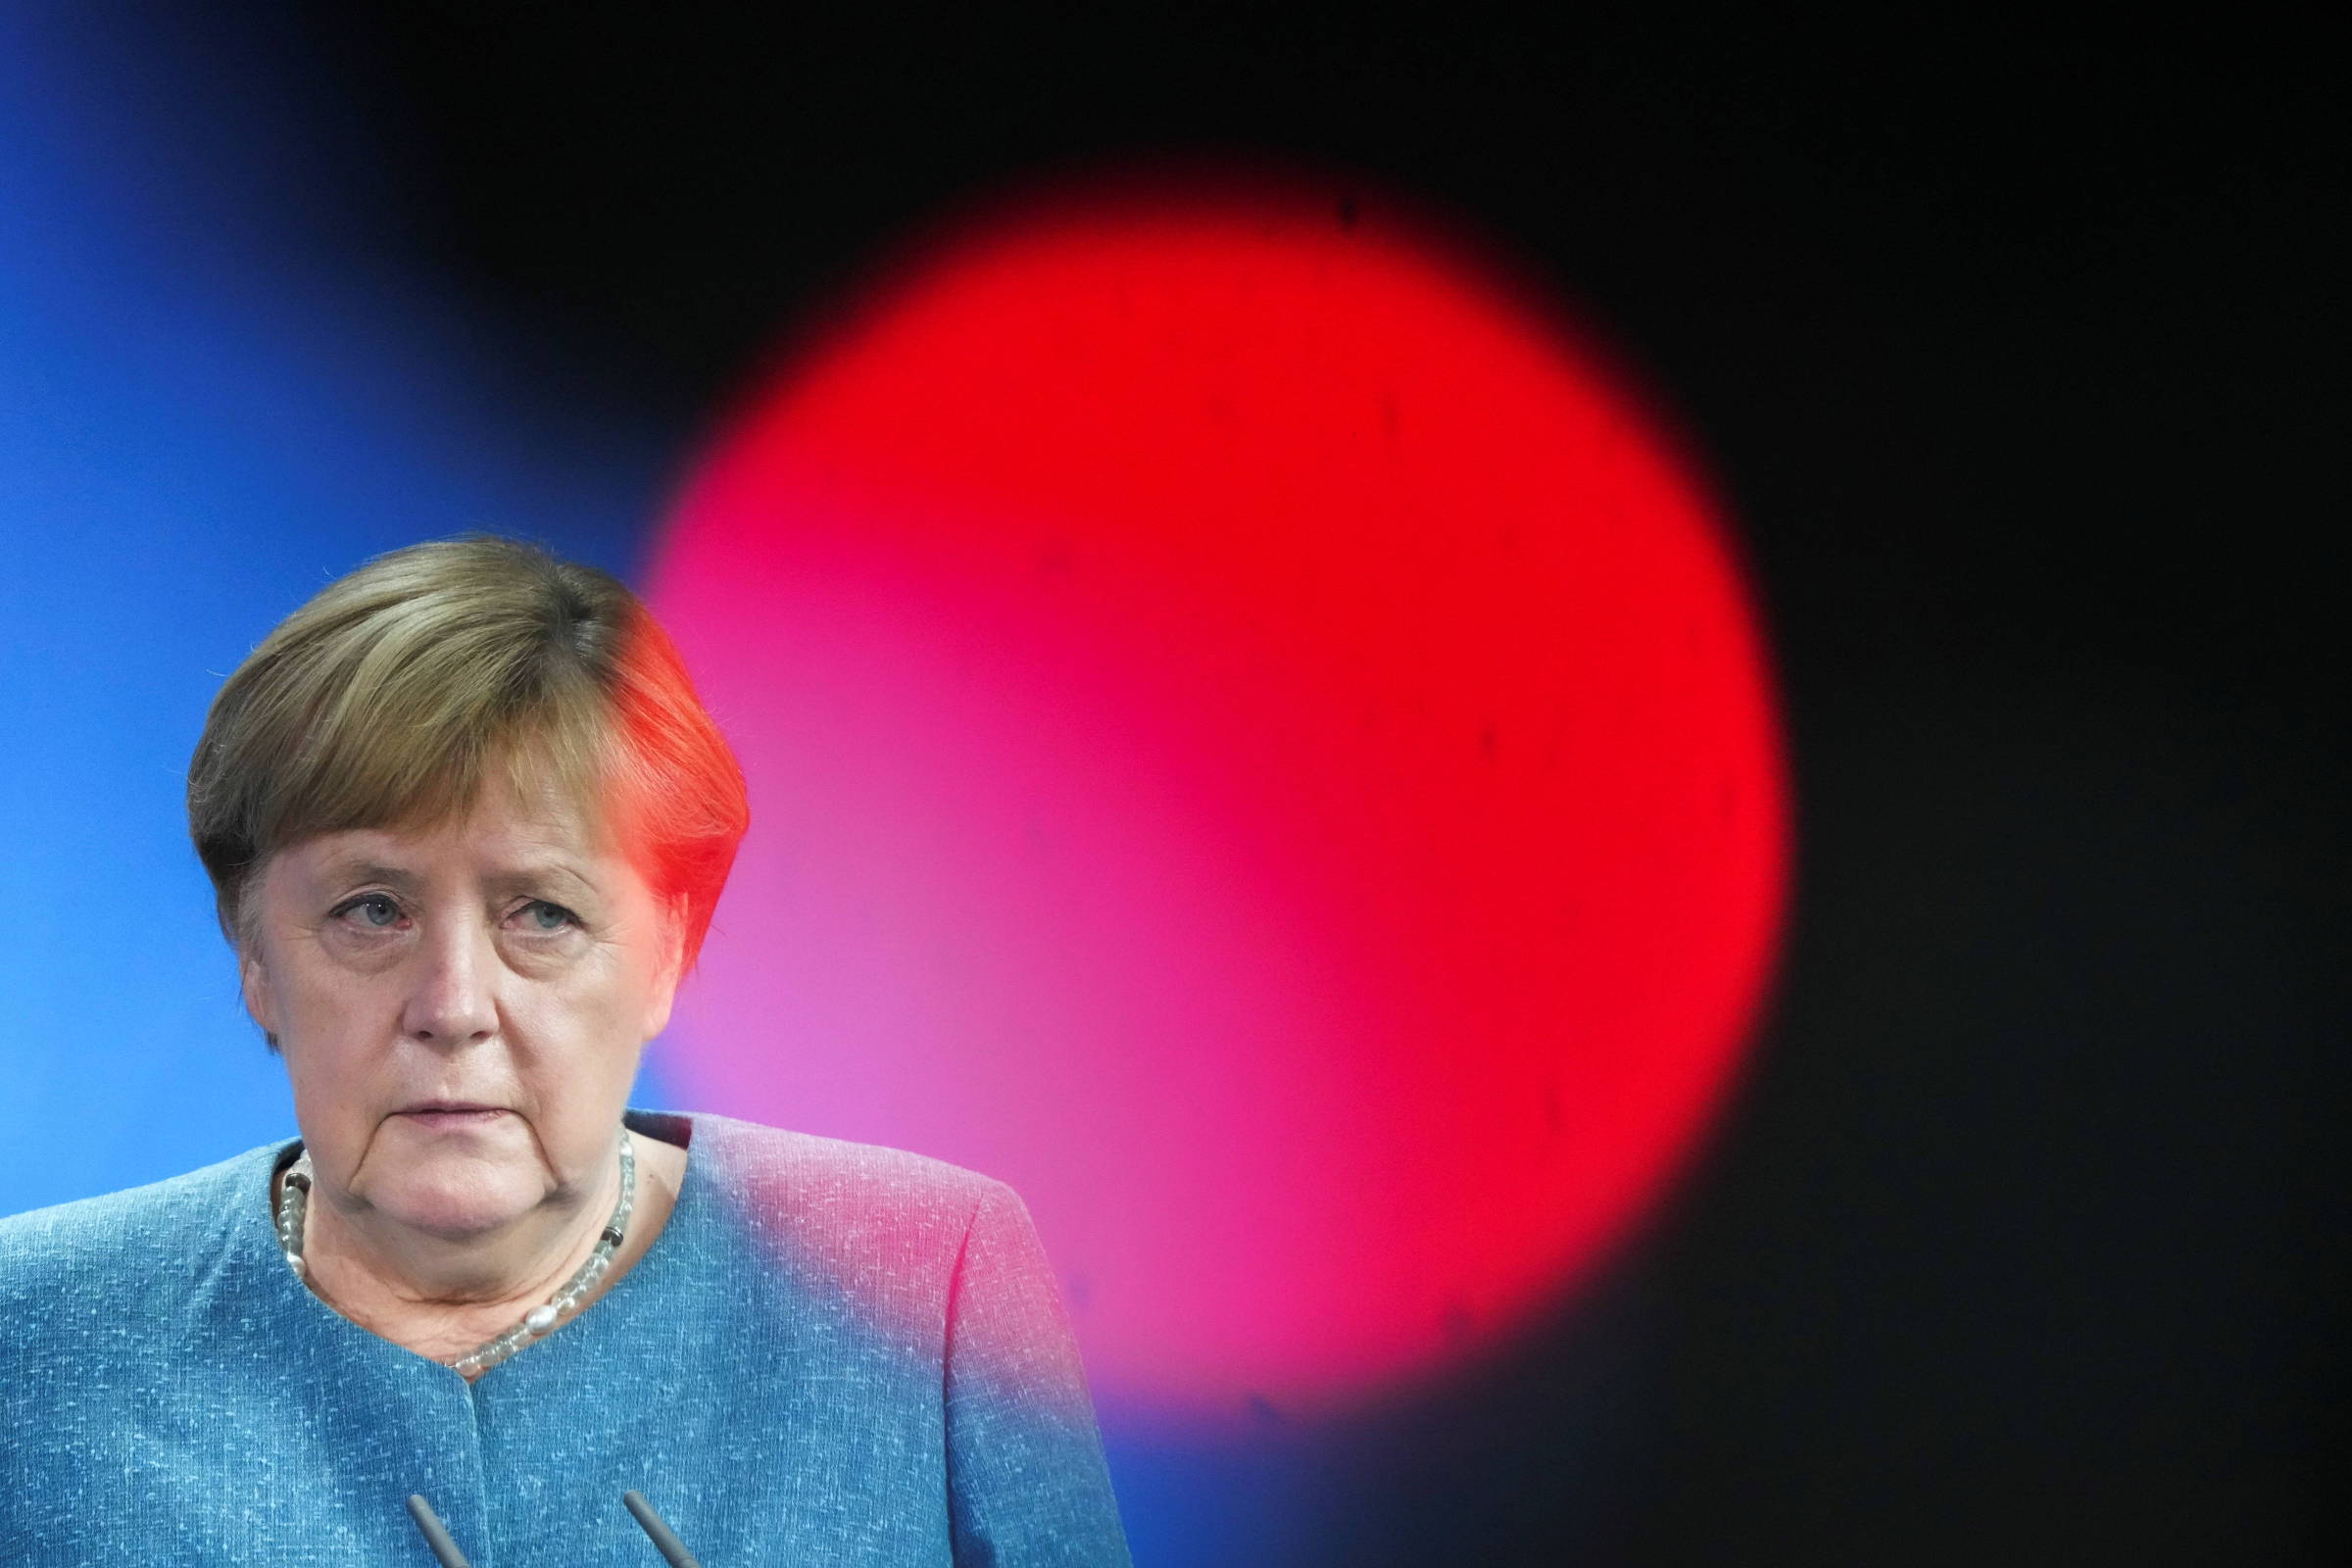 ‚Jamais faria coalizão com A Esquerda‘, diz Merkel, sobre sua sucessão – 31/08/2021 – Mundo